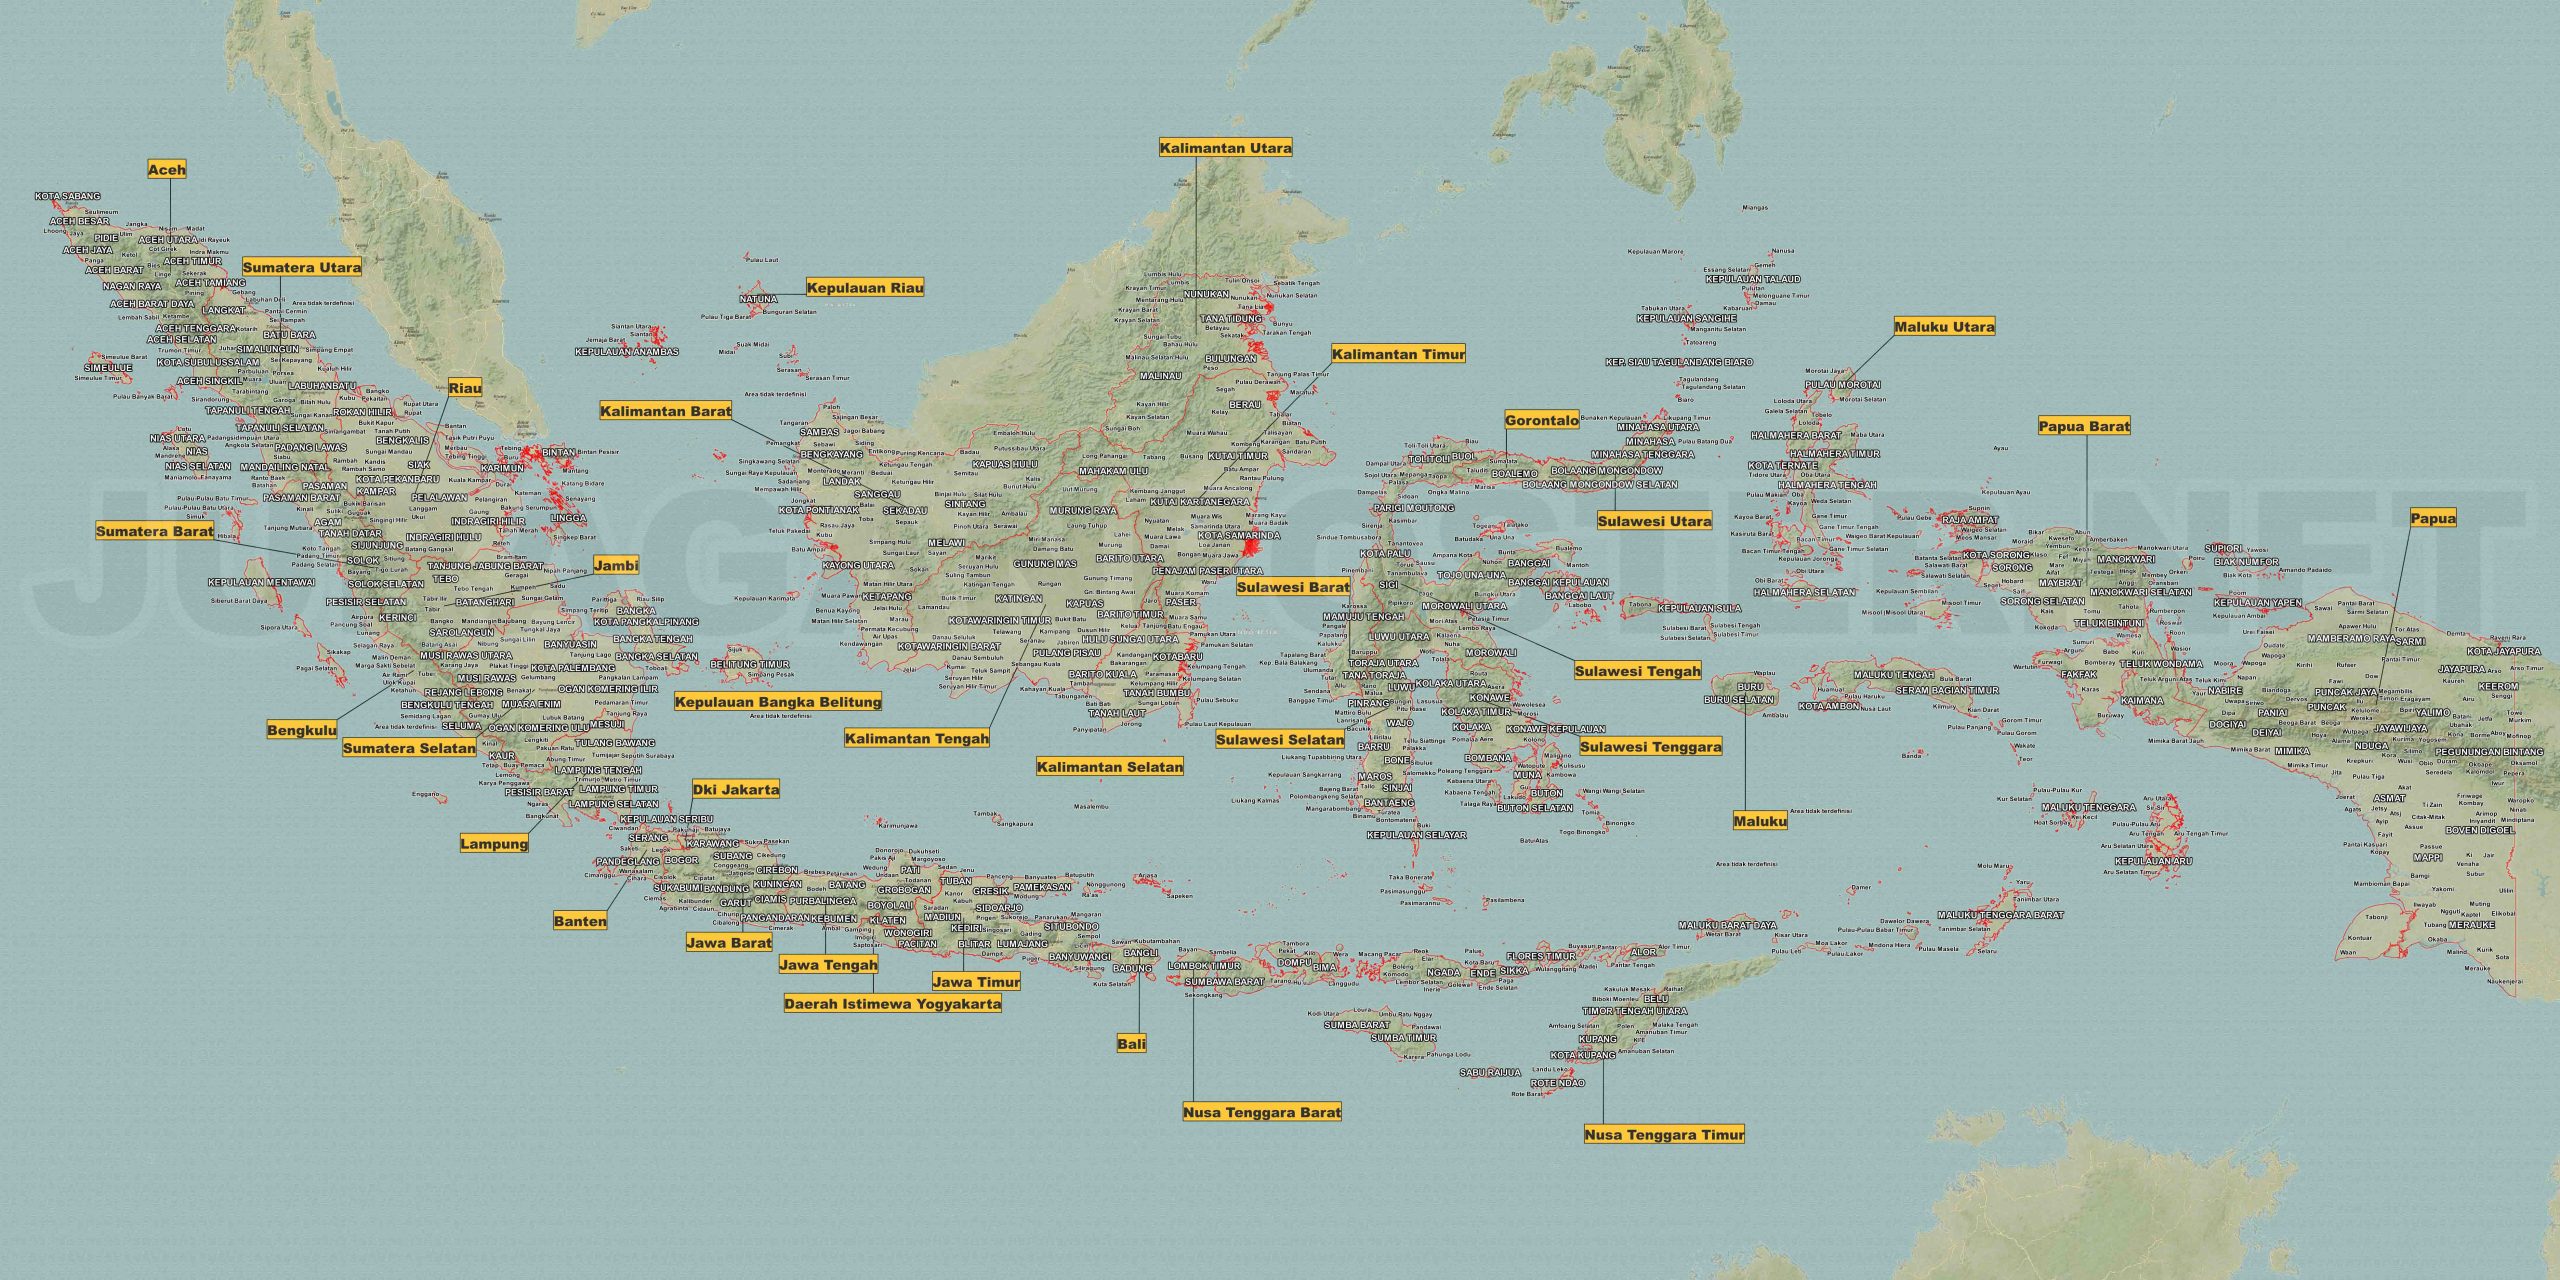 Menggambar Peta Indonesia dengan Mudah: Panduan Praktis